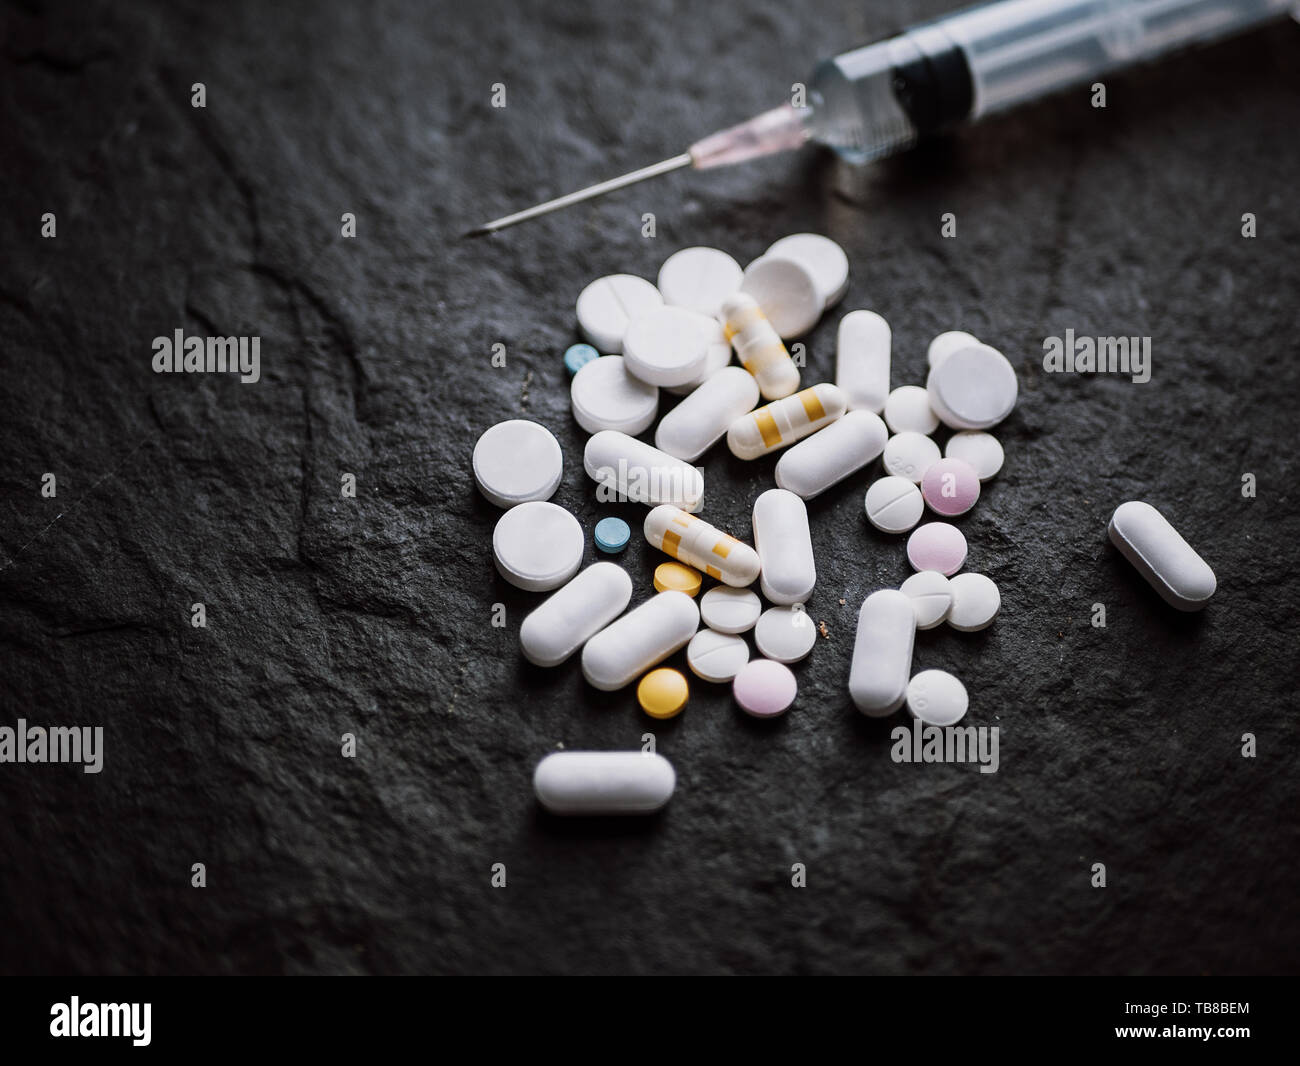 Sortierte bunte pharmazeutische Medizin Pillen, Tabletten und Kapseln mit  Injektionsspritzen Injektionsnadel auf schwarzen Stein Hintergrund.  Apotheke und Stockfotografie - Alamy